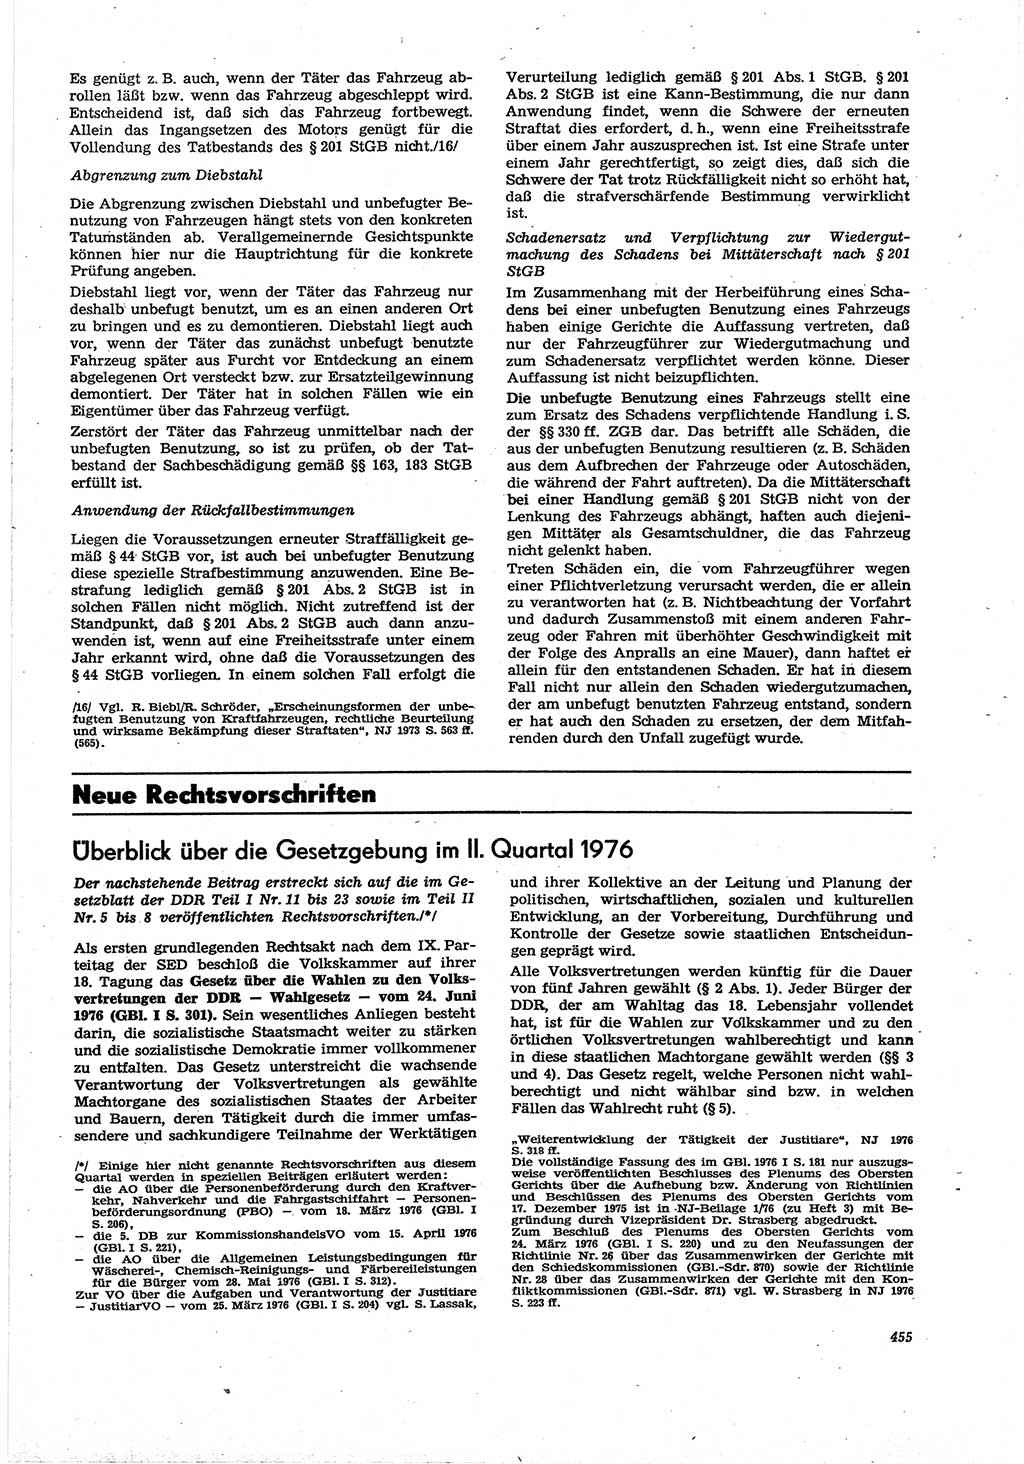 Neue Justiz (NJ), Zeitschrift für Recht und Rechtswissenschaft [Deutsche Demokratische Republik (DDR)], 30. Jahrgang 1976, Seite 455 (NJ DDR 1976, S. 455)